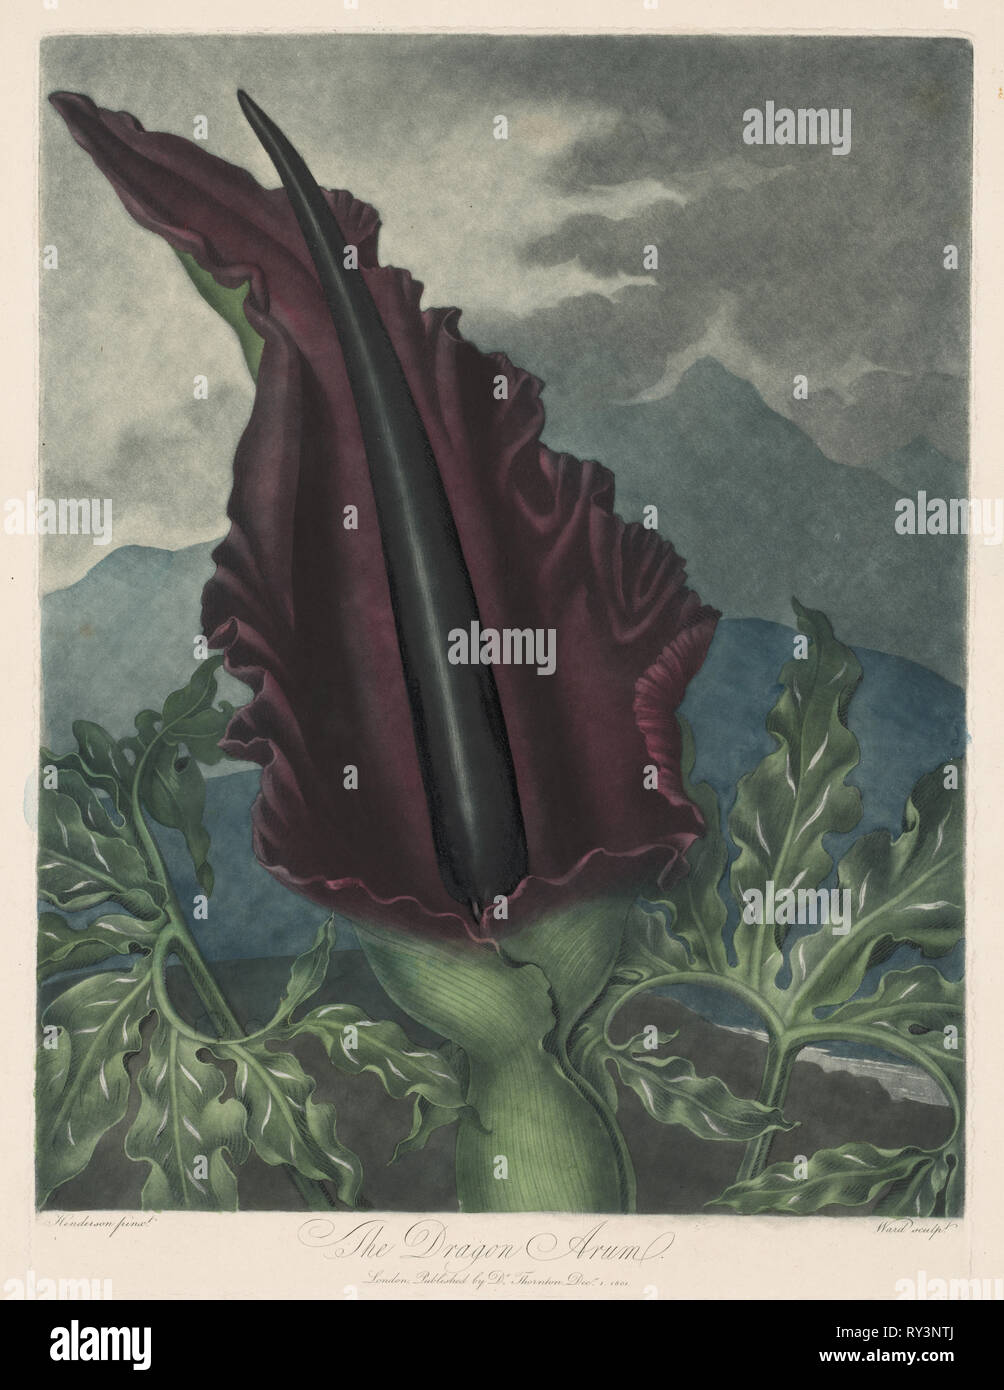 Der Drache Arum, Schwarz Calla oder Solomon's Lily, 1799-1807. Robert John Thornton (British, 1768-1837), William Ward (British, 1776-1826). Schabkunst Stockfoto